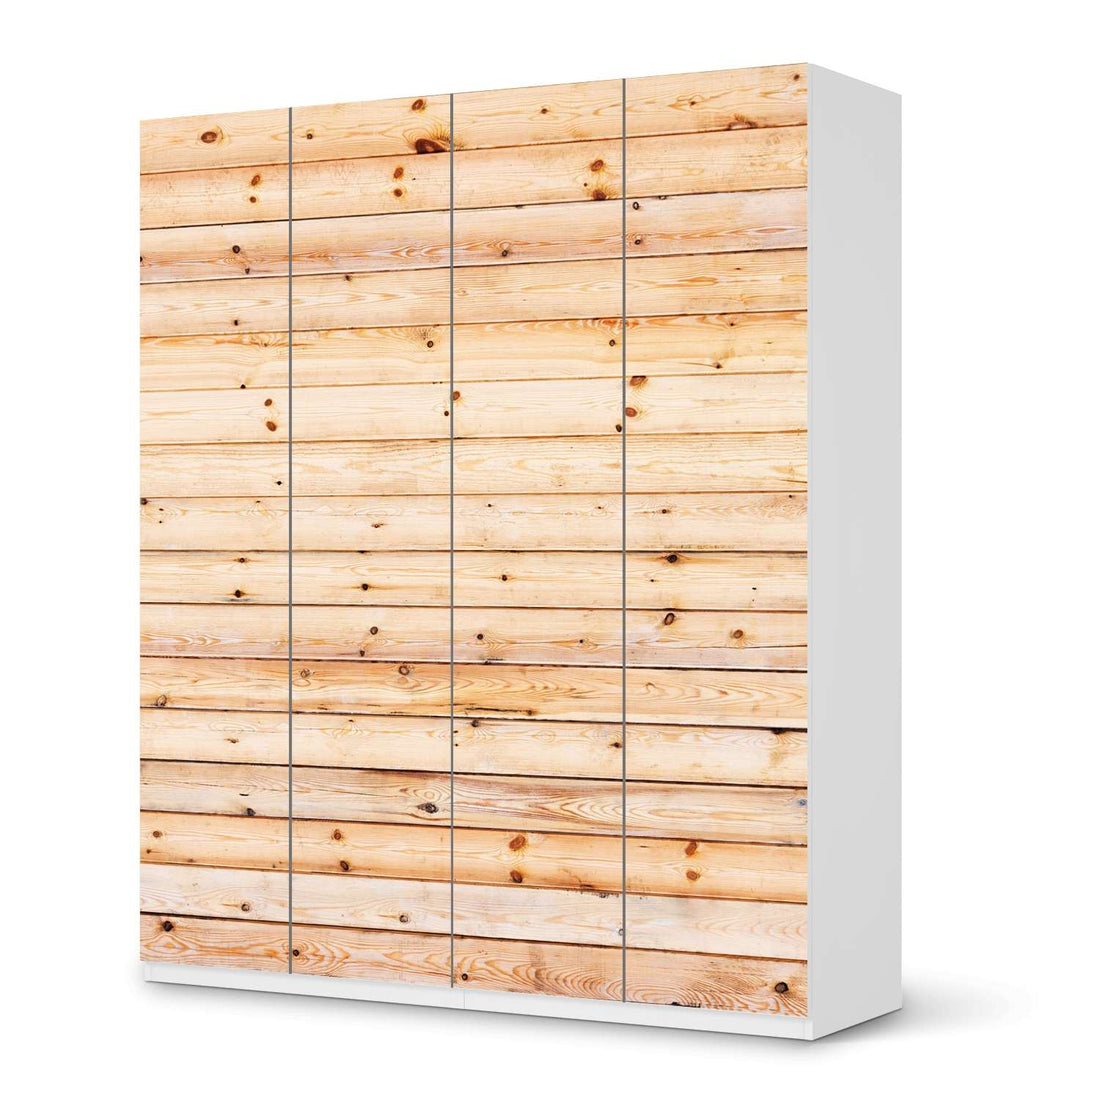 Möbelfolie Bright Planks - IKEA Pax Schrank 236 cm Höhe - 4 Türen - weiss